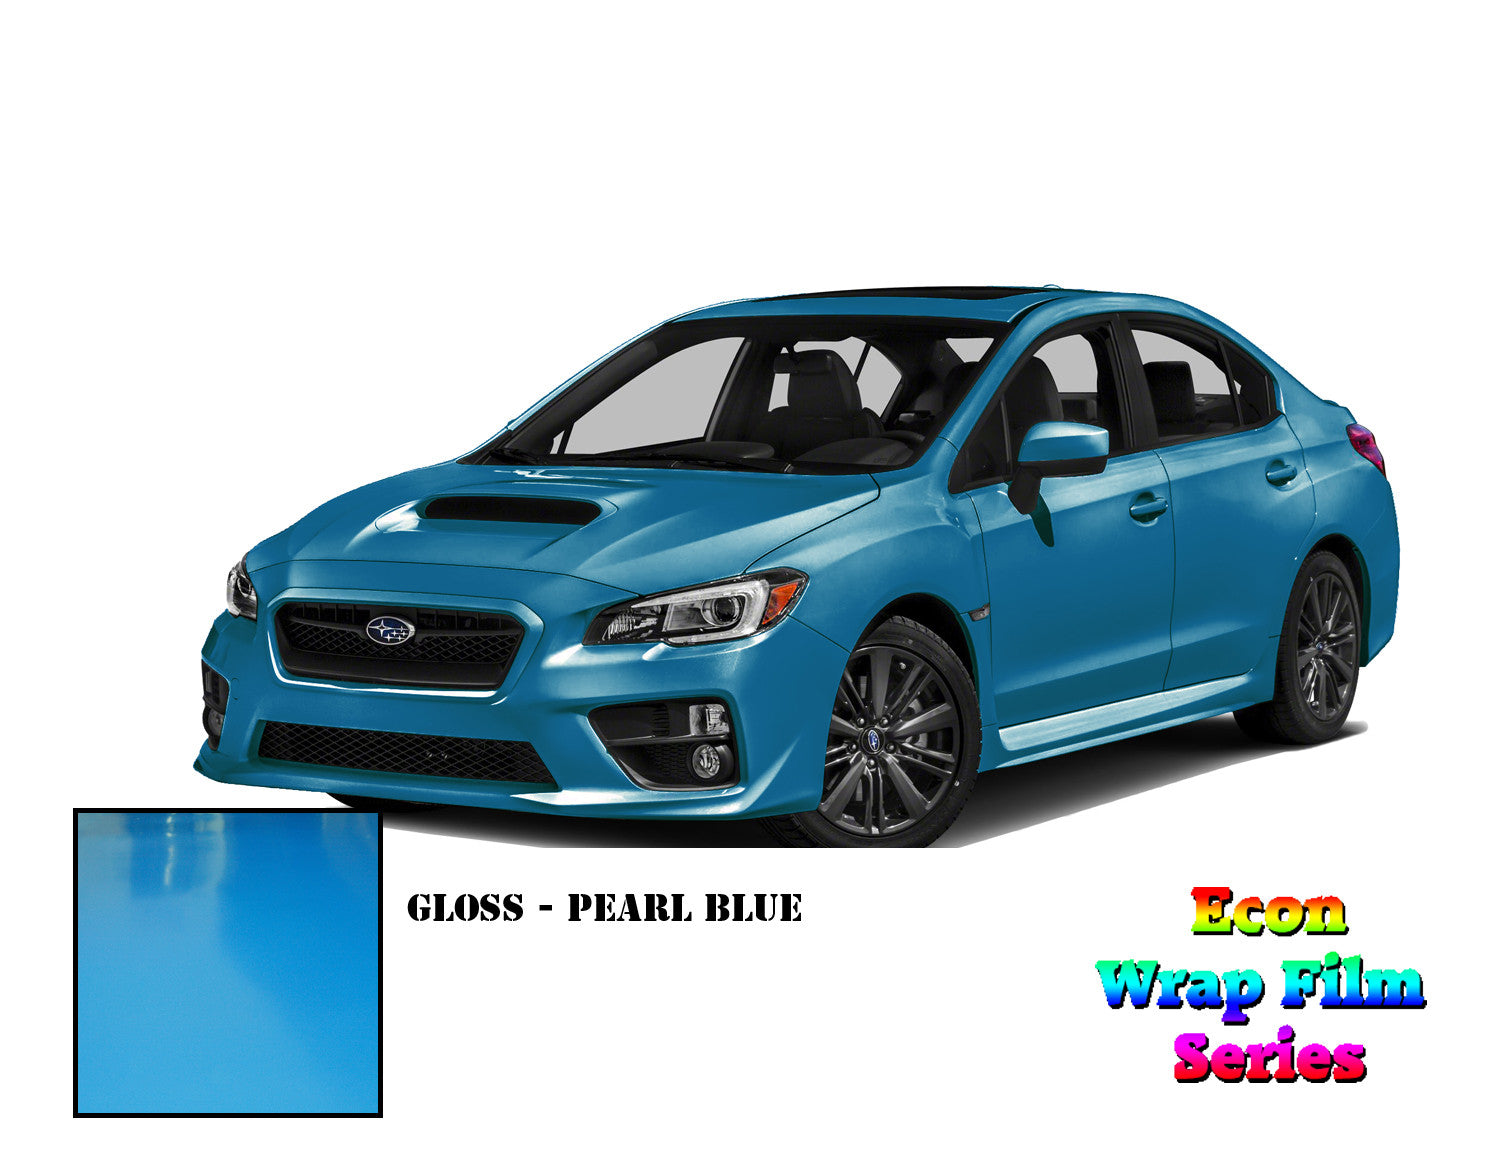 Econ Wrap Film Series - Gloss Pearl Blue - Hachi Auto